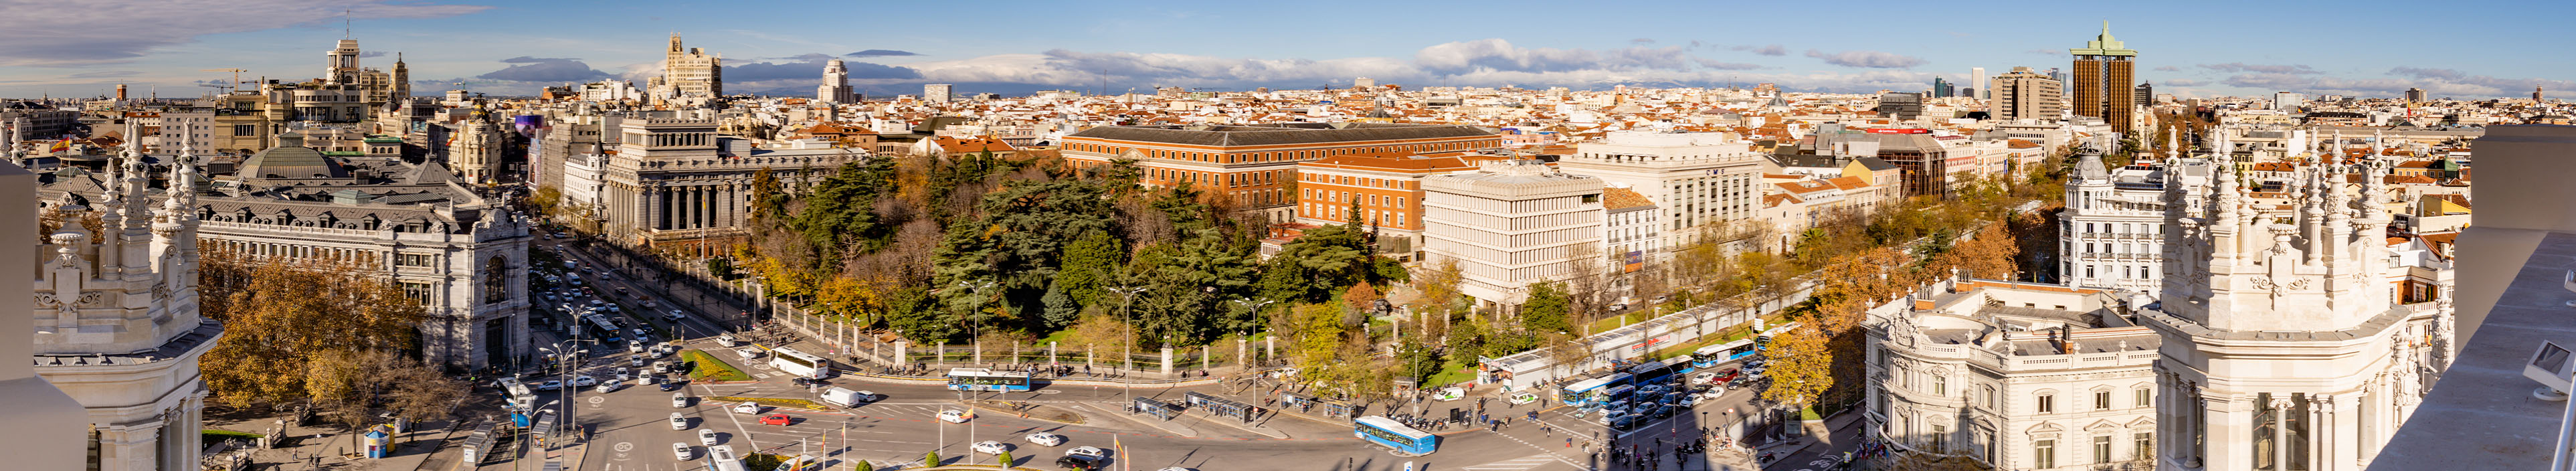 Blick auf einen Platz in Madrid, umgeben von Hotels und weiteren Gebäuden.